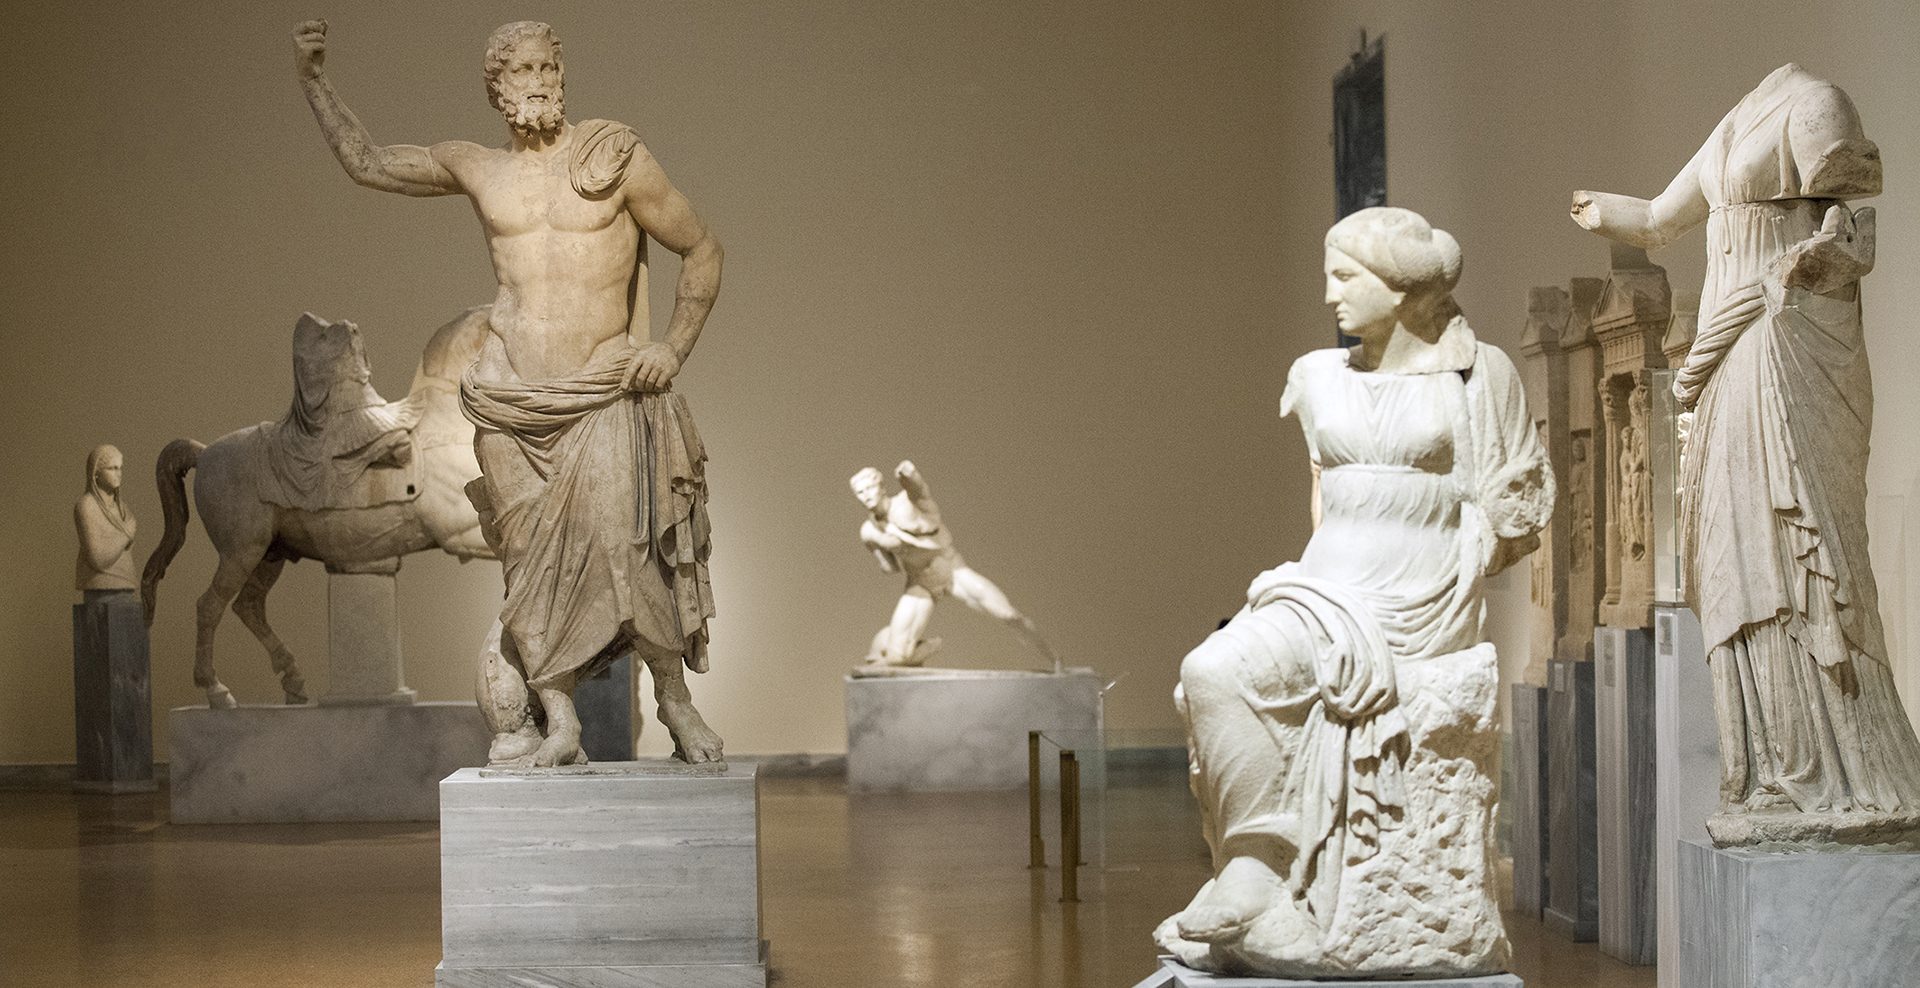 30" 15TH CENTURY ANCIENT GREEK & ROMAN FAMOUS HERCULES STATUE SCULPTURE